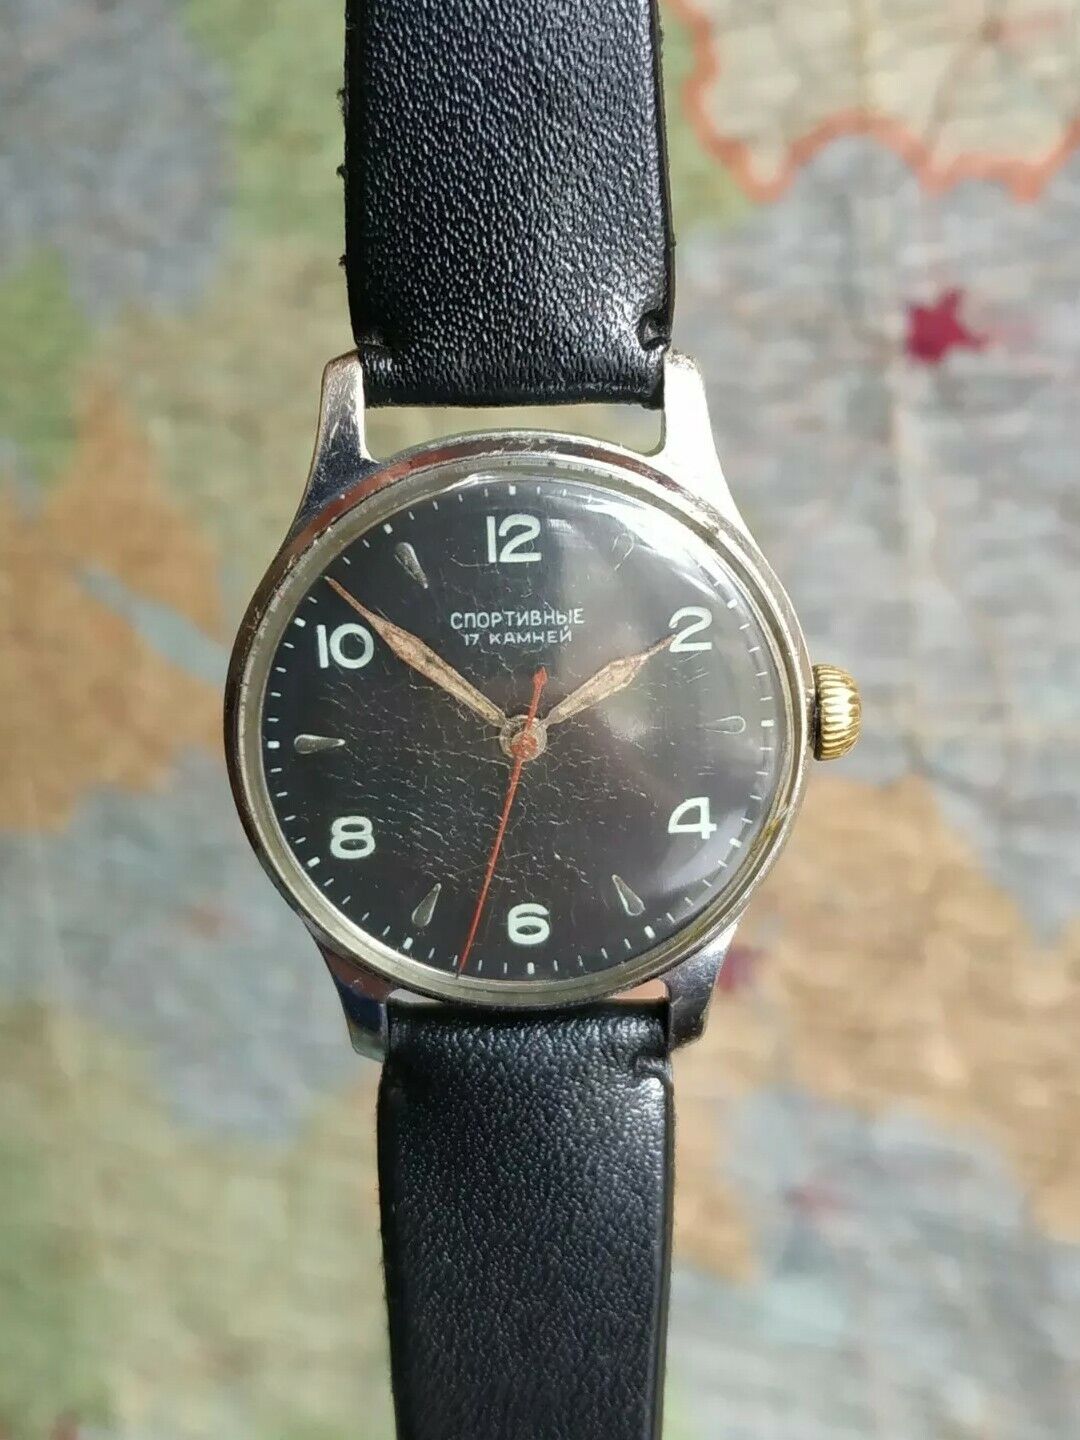 SPORTIVNIE Kirovskie 1MChZ. Soviet Vintage watch stop second USSR 16mm 17jewels